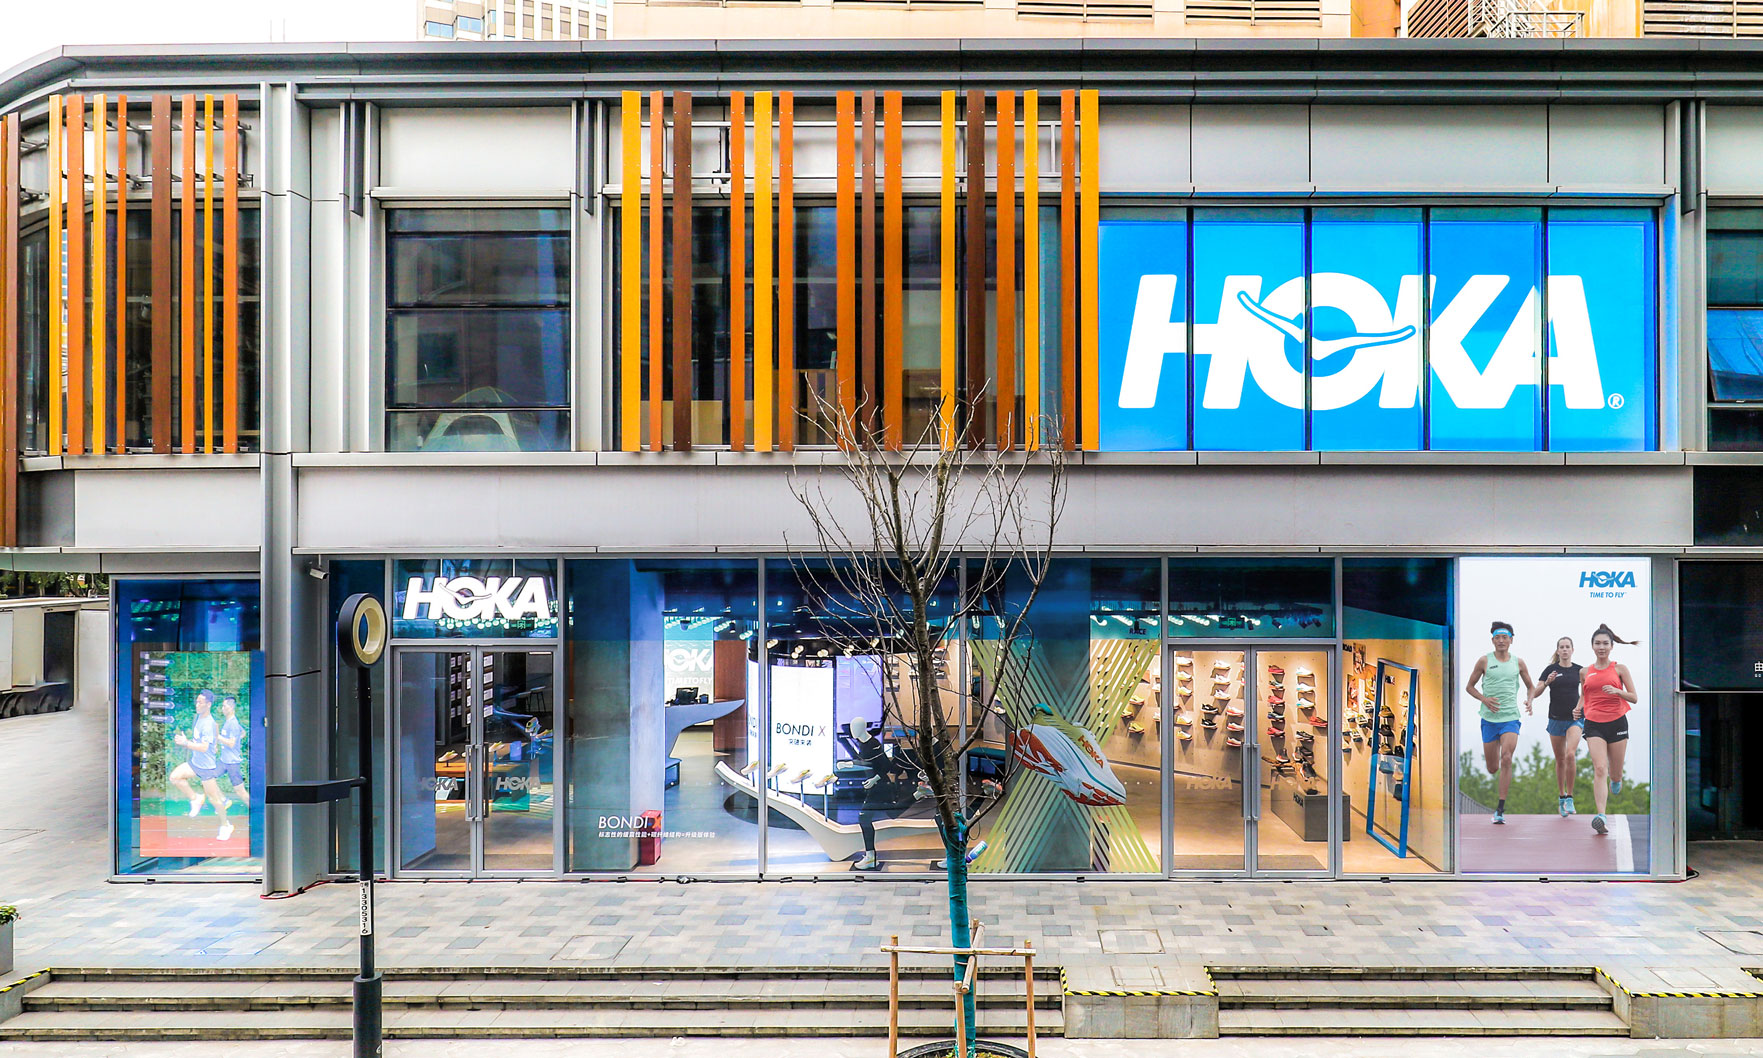 HOKA ONE ONE® 全球首家直营品牌体验店正式开业